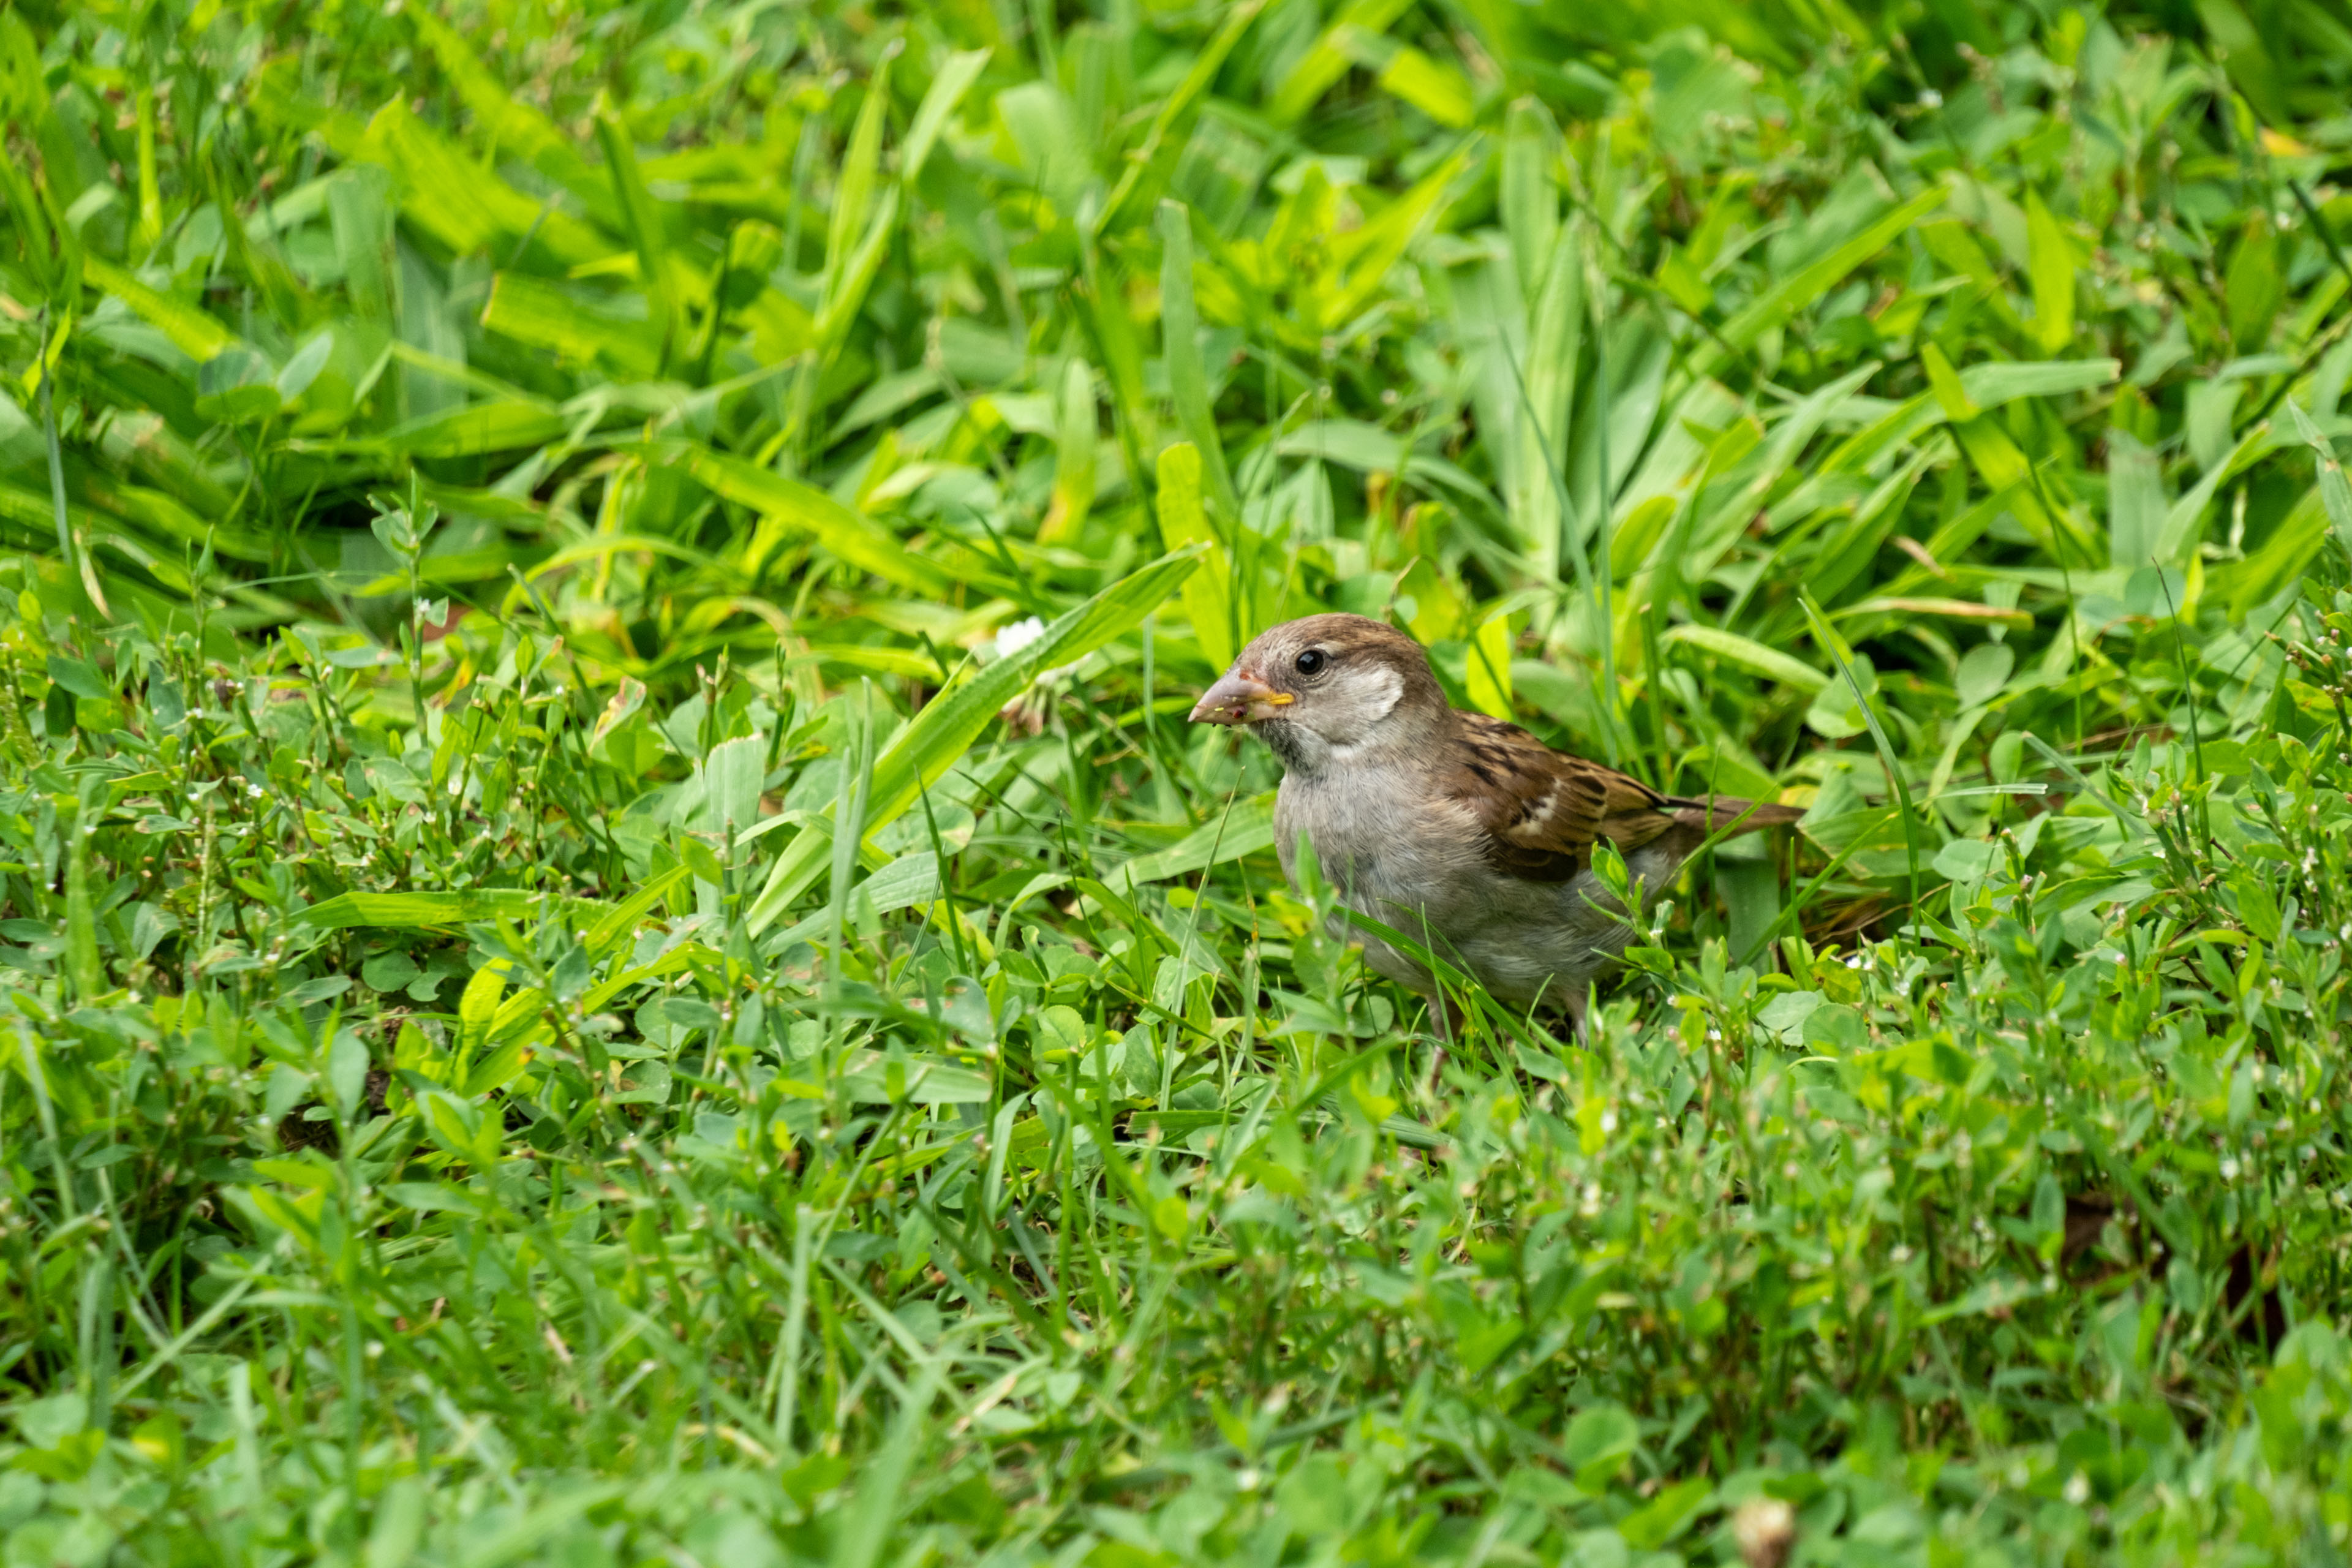 a sparrow on the grass